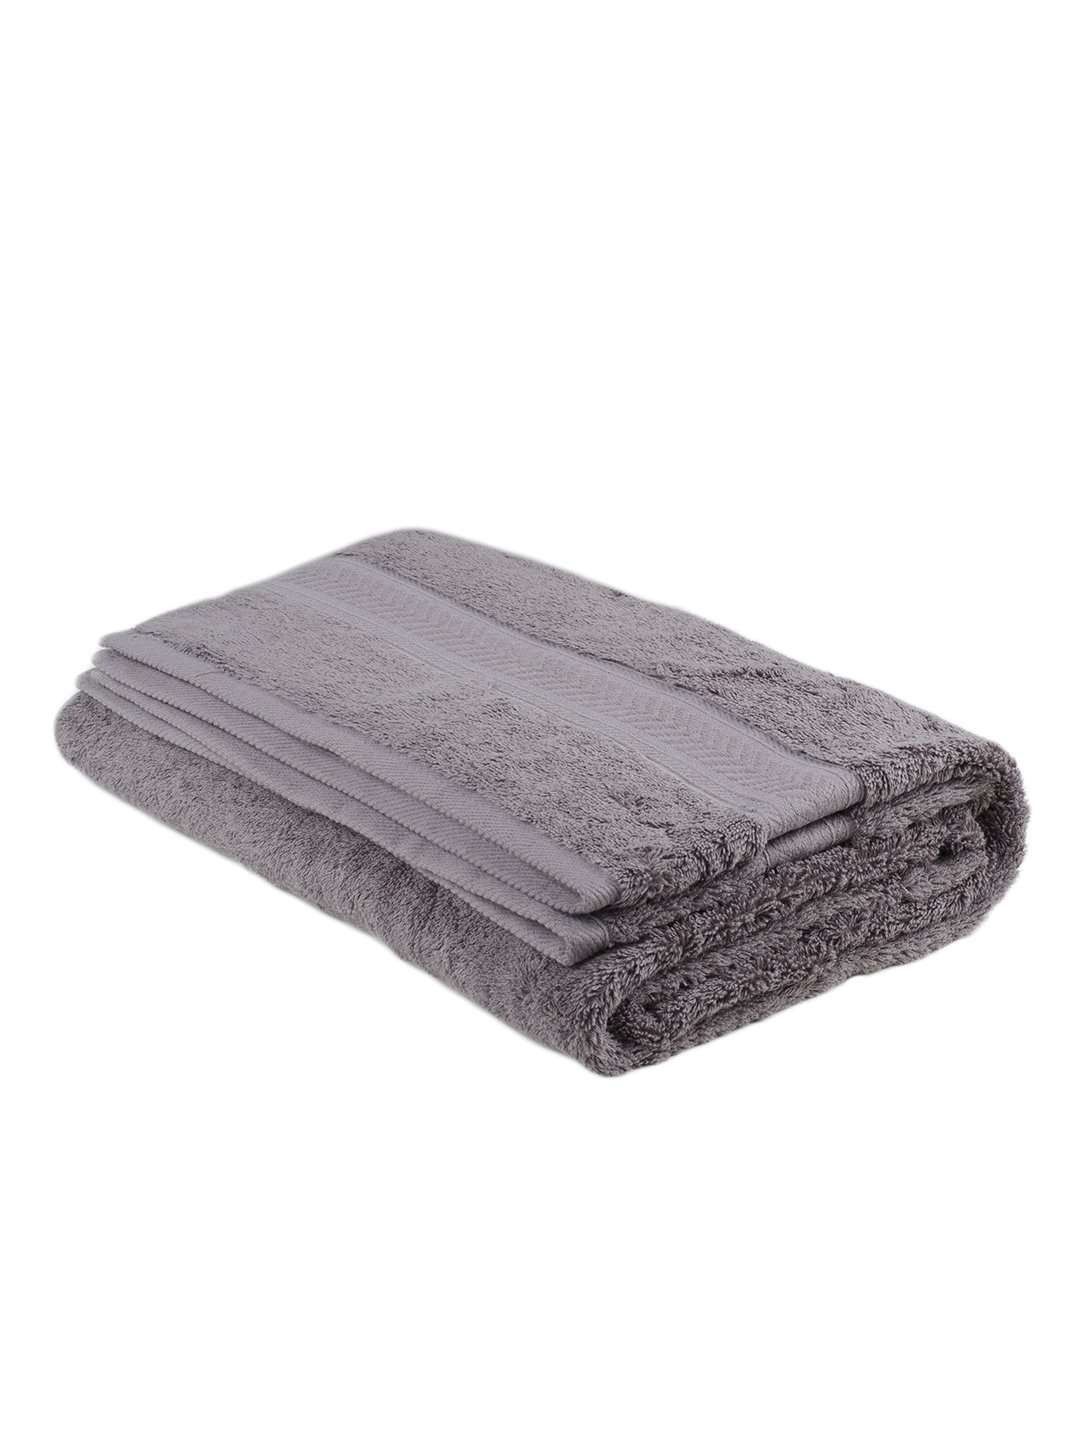 Turkish Bath Cotton 700 GSM Royal Luxury Bath Towel : Grey - SWHF